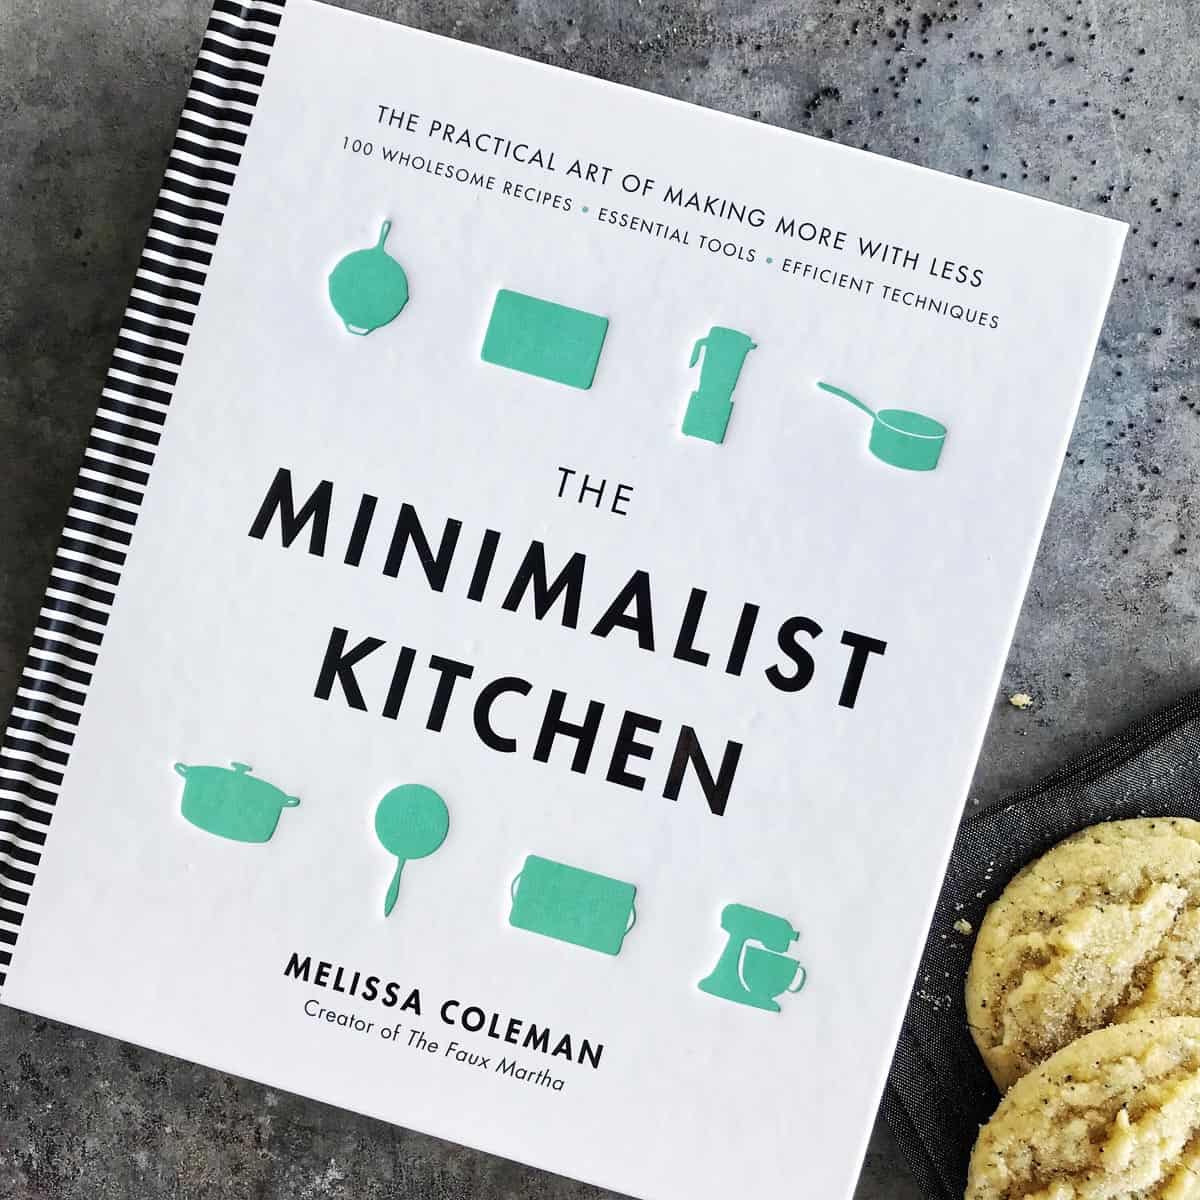 The Minimalist Kitchen by Melissa Coleman cookbook